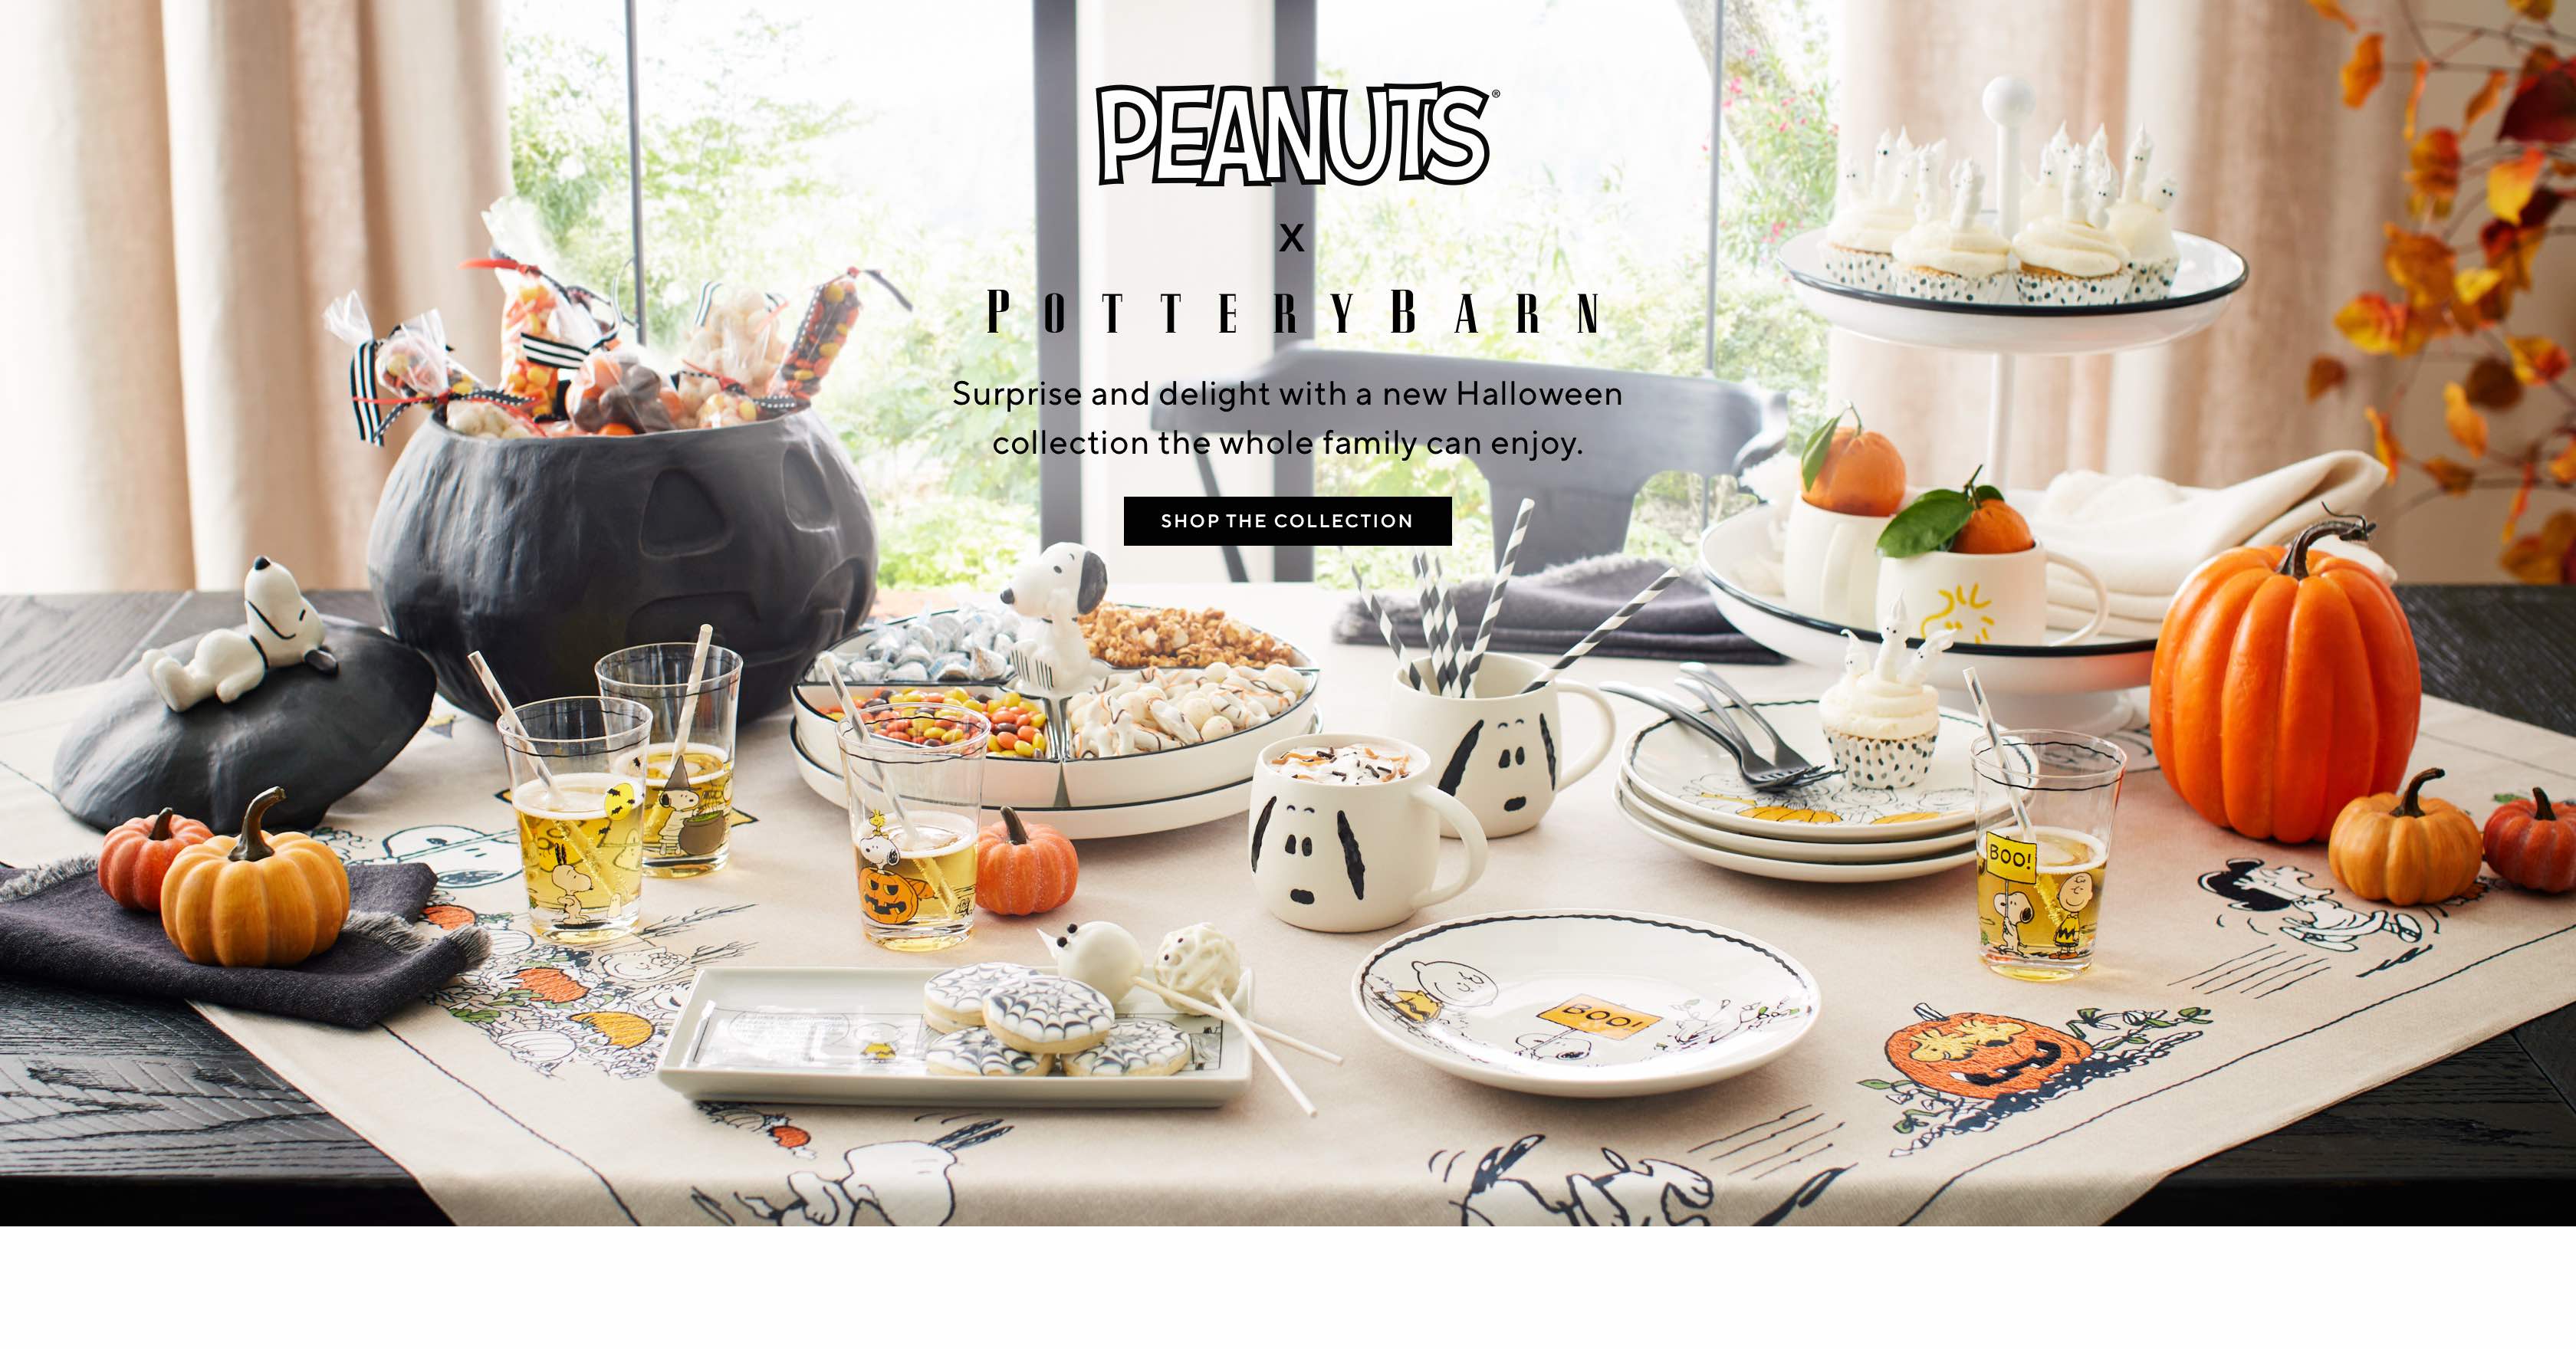 Peanuts x Pottery Barn